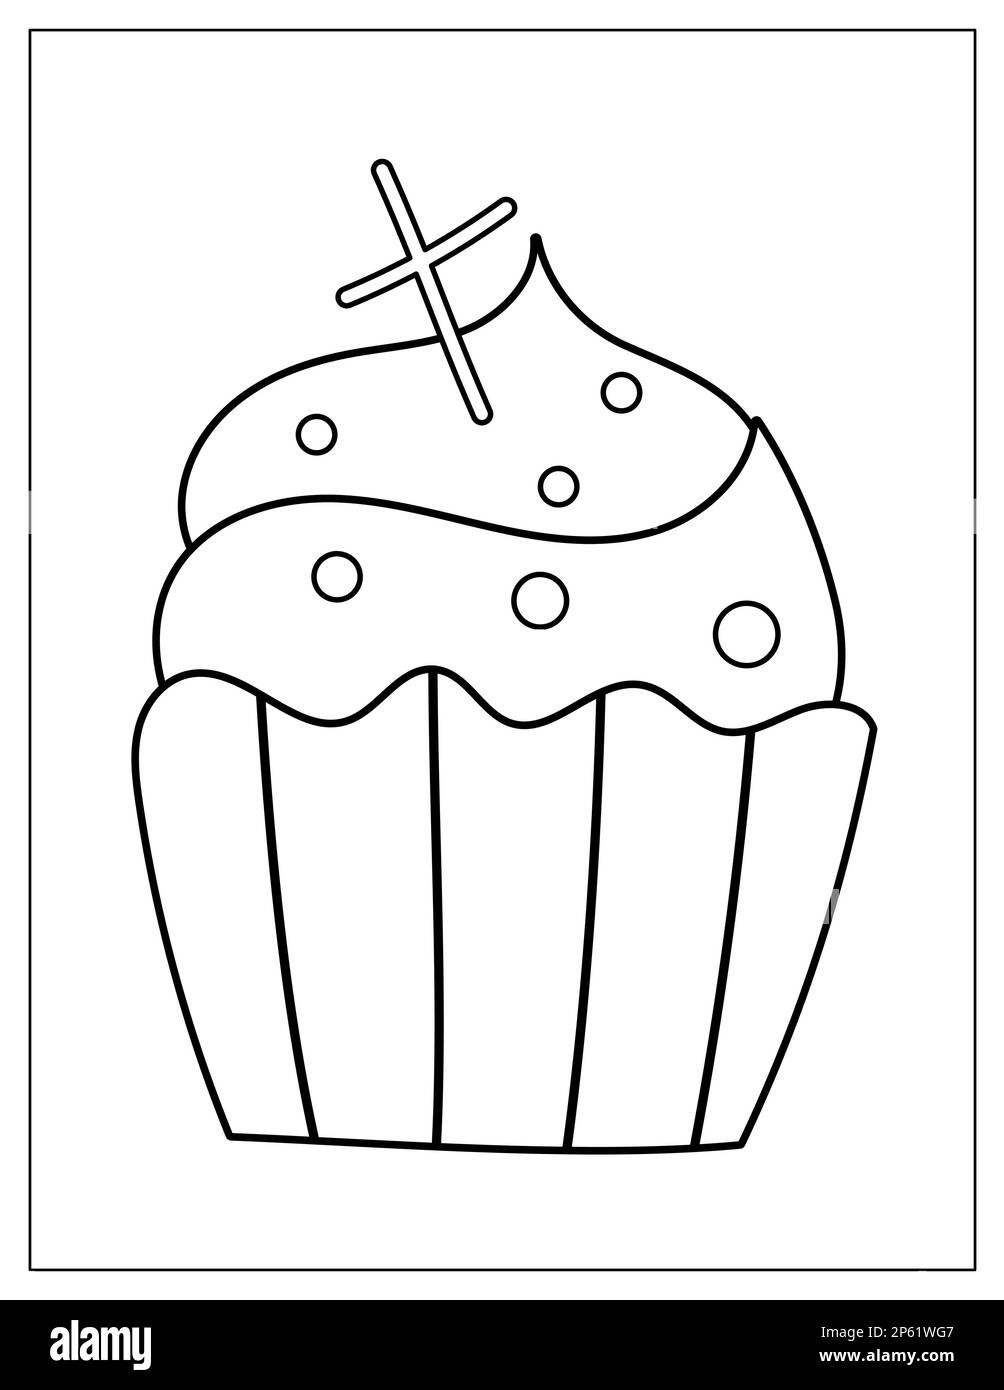 Pagina da colorare di Halloween con cupcake spettrale con croce su di esso. Scricchiolante stampa dessert autunnale per libro da colorare Illustrazione Vettoriale